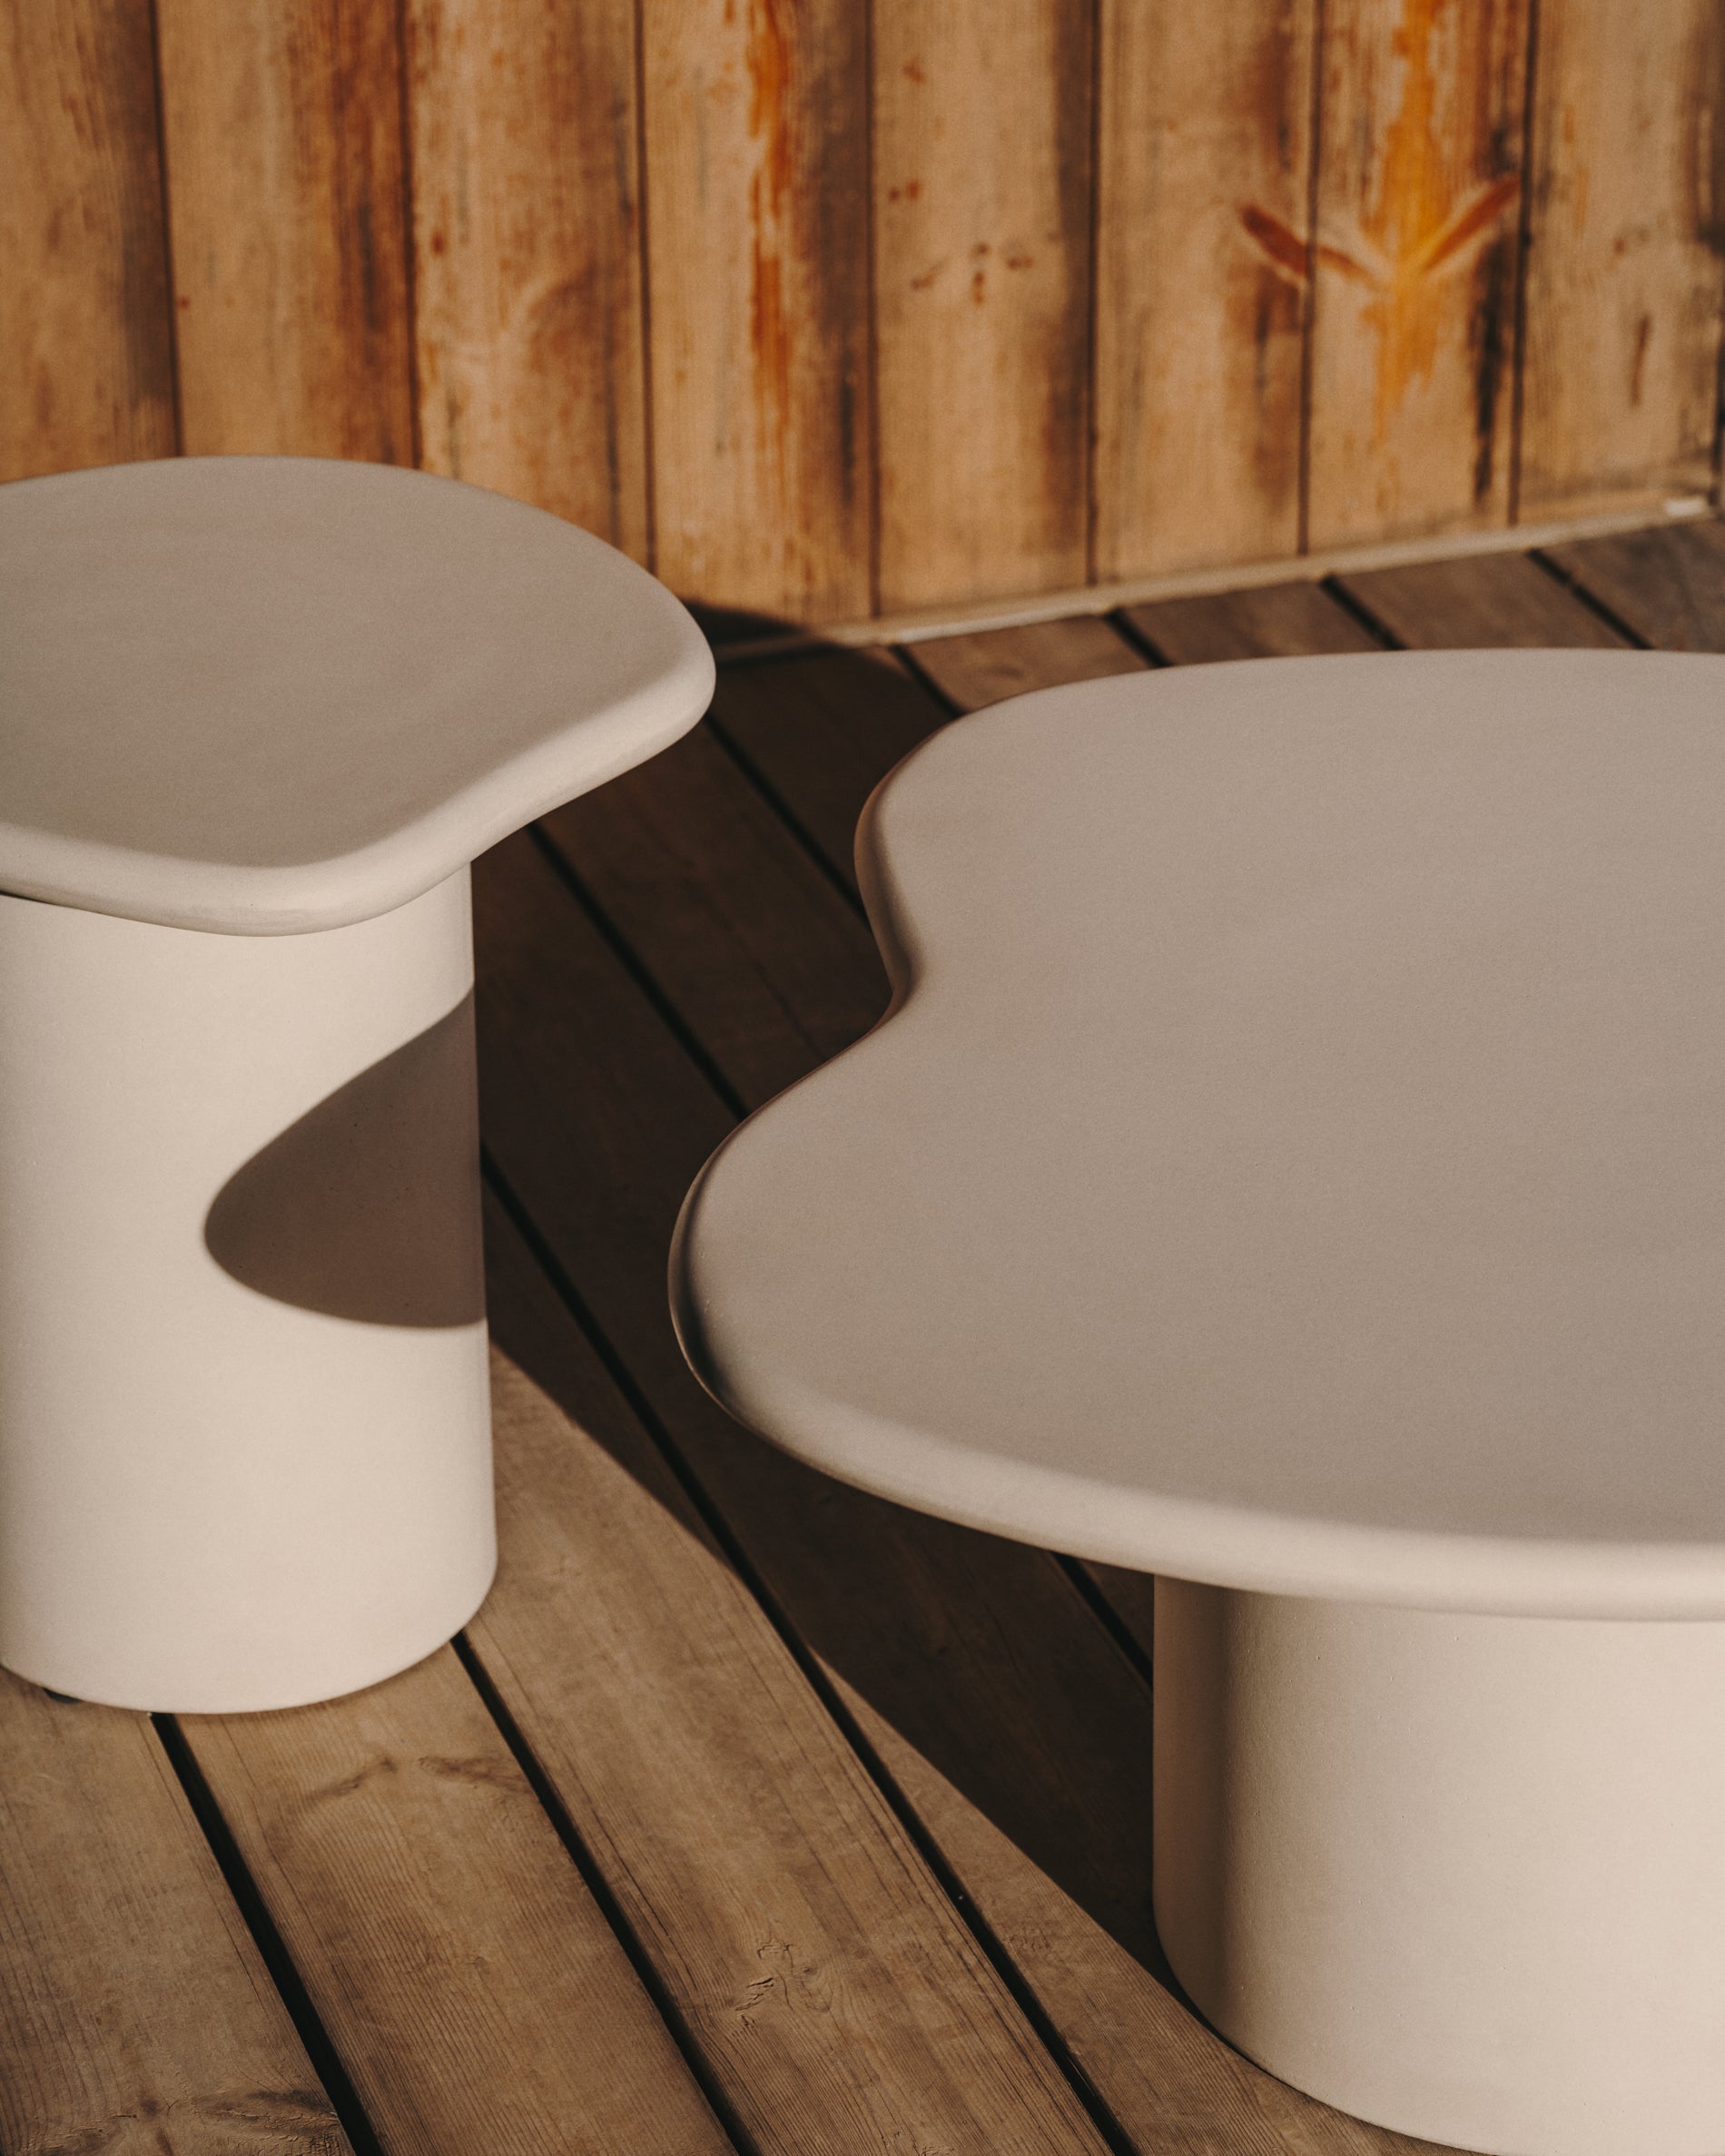 Macarella fehér cement oldalsó asztal, 48 x 47 cm